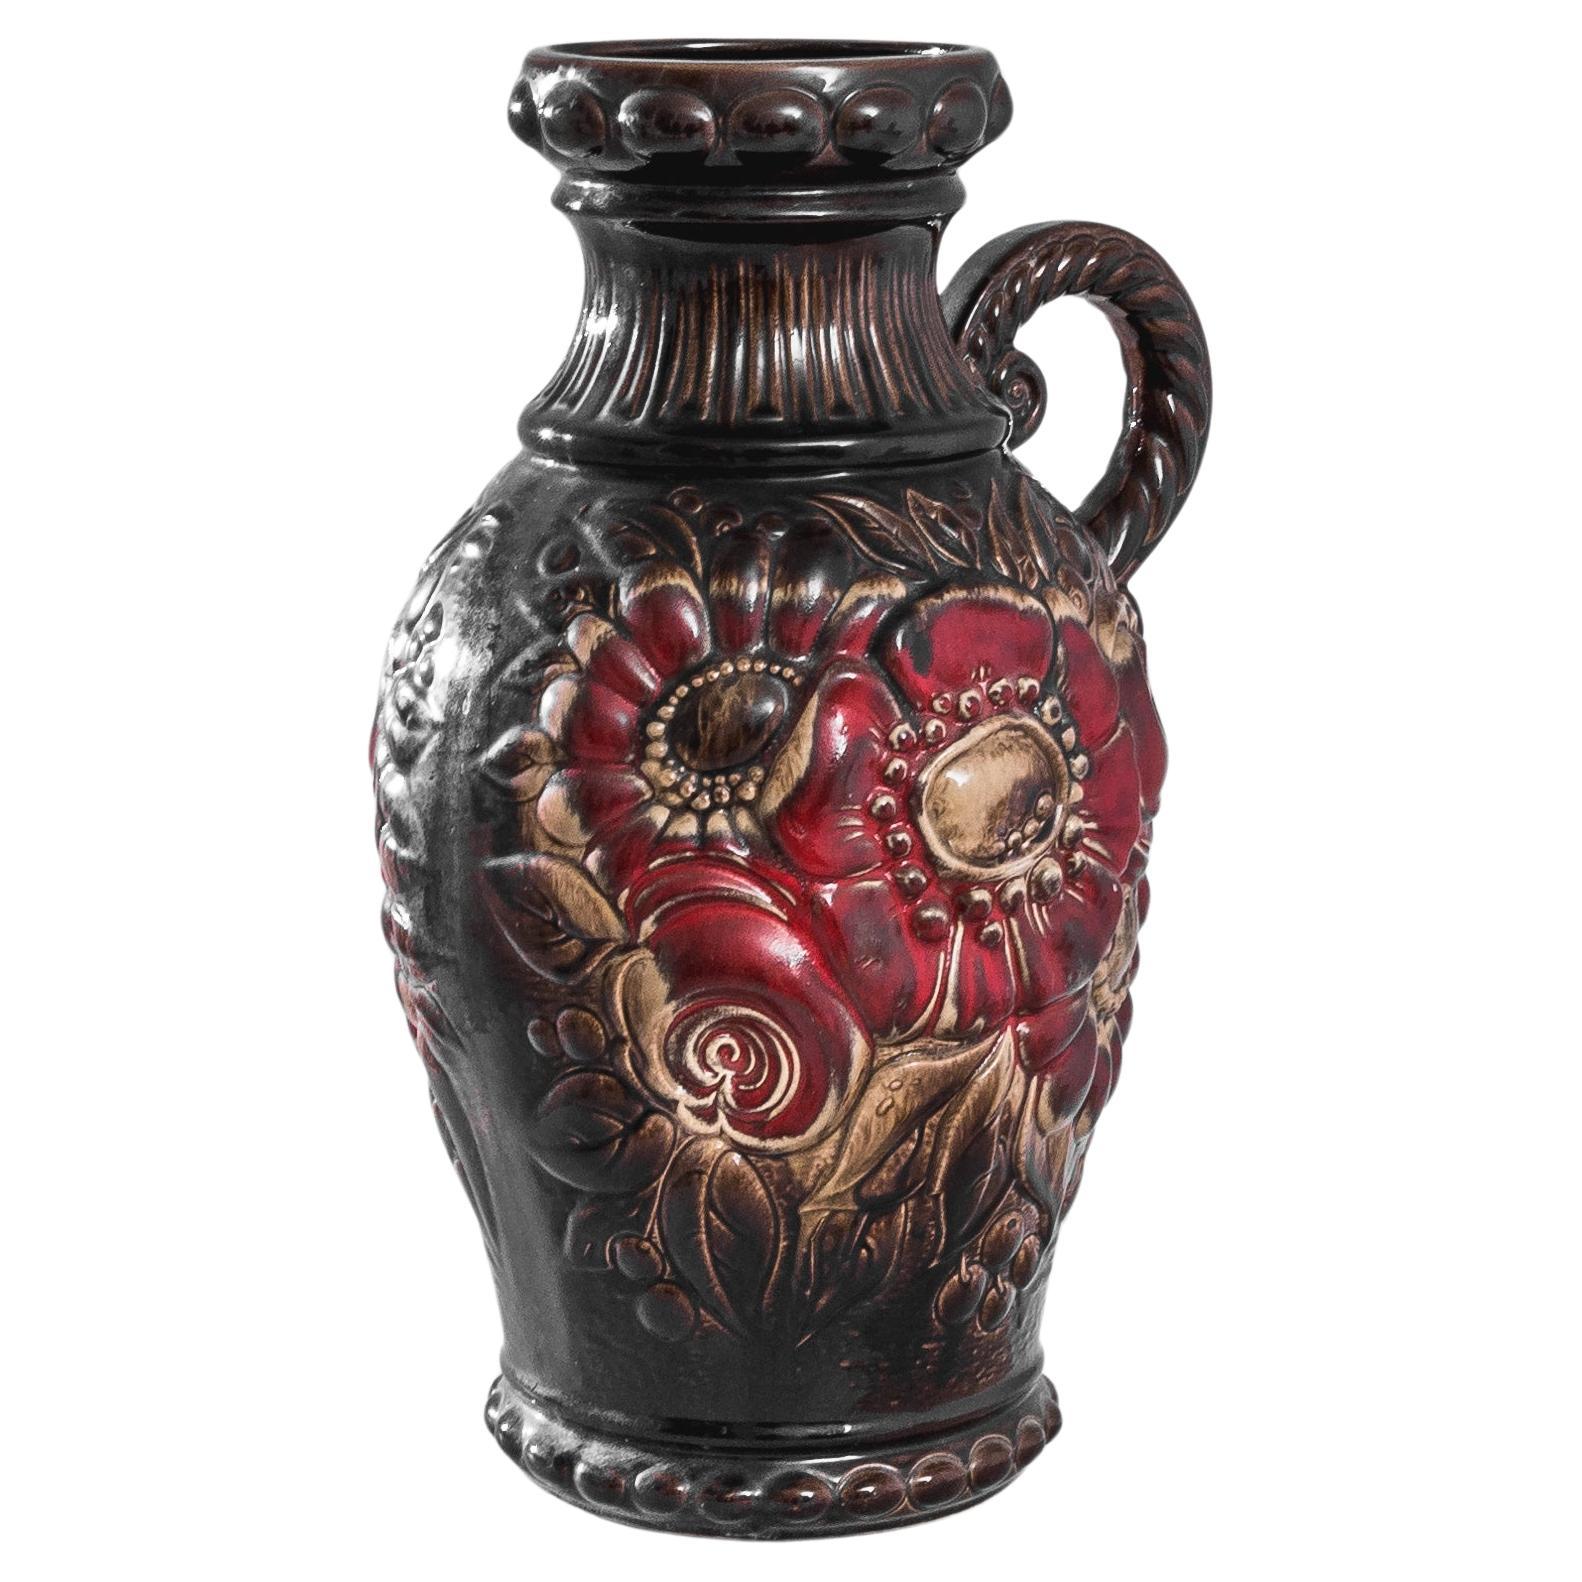 1960s German "W. Germany" Ceramic Vase For Sale